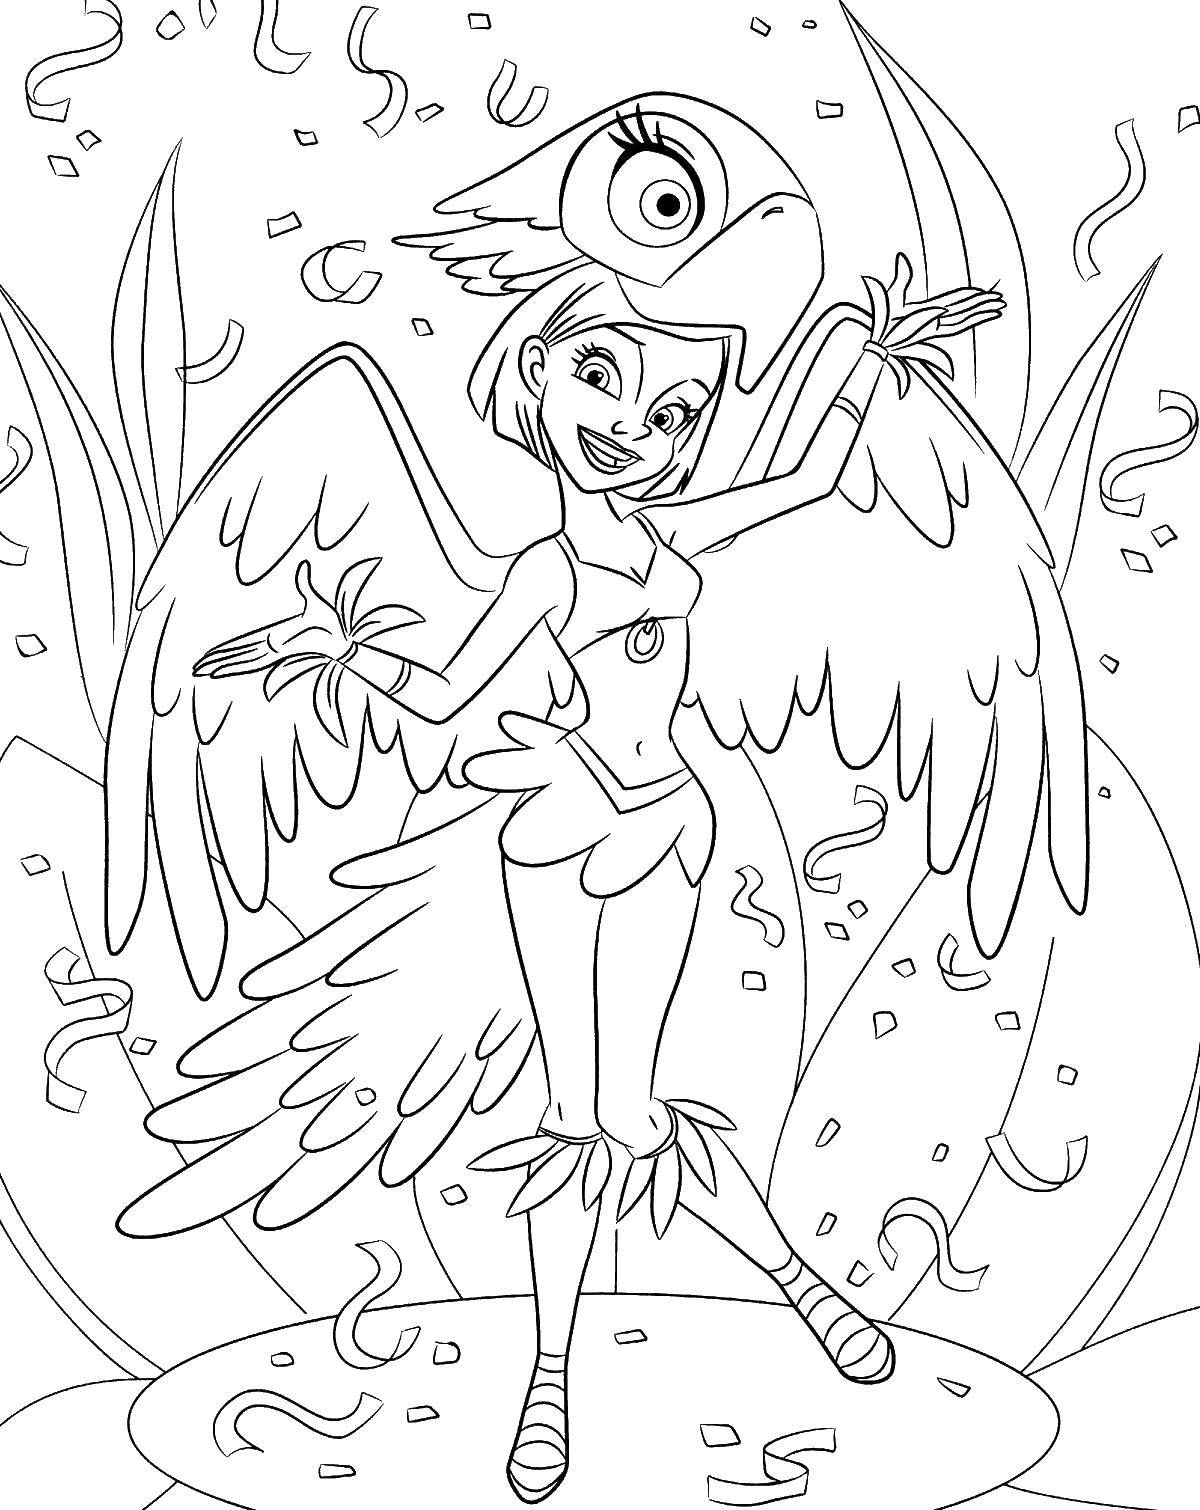 Раскраска рио Линда - попугай из мультфильма (рио, Линда)